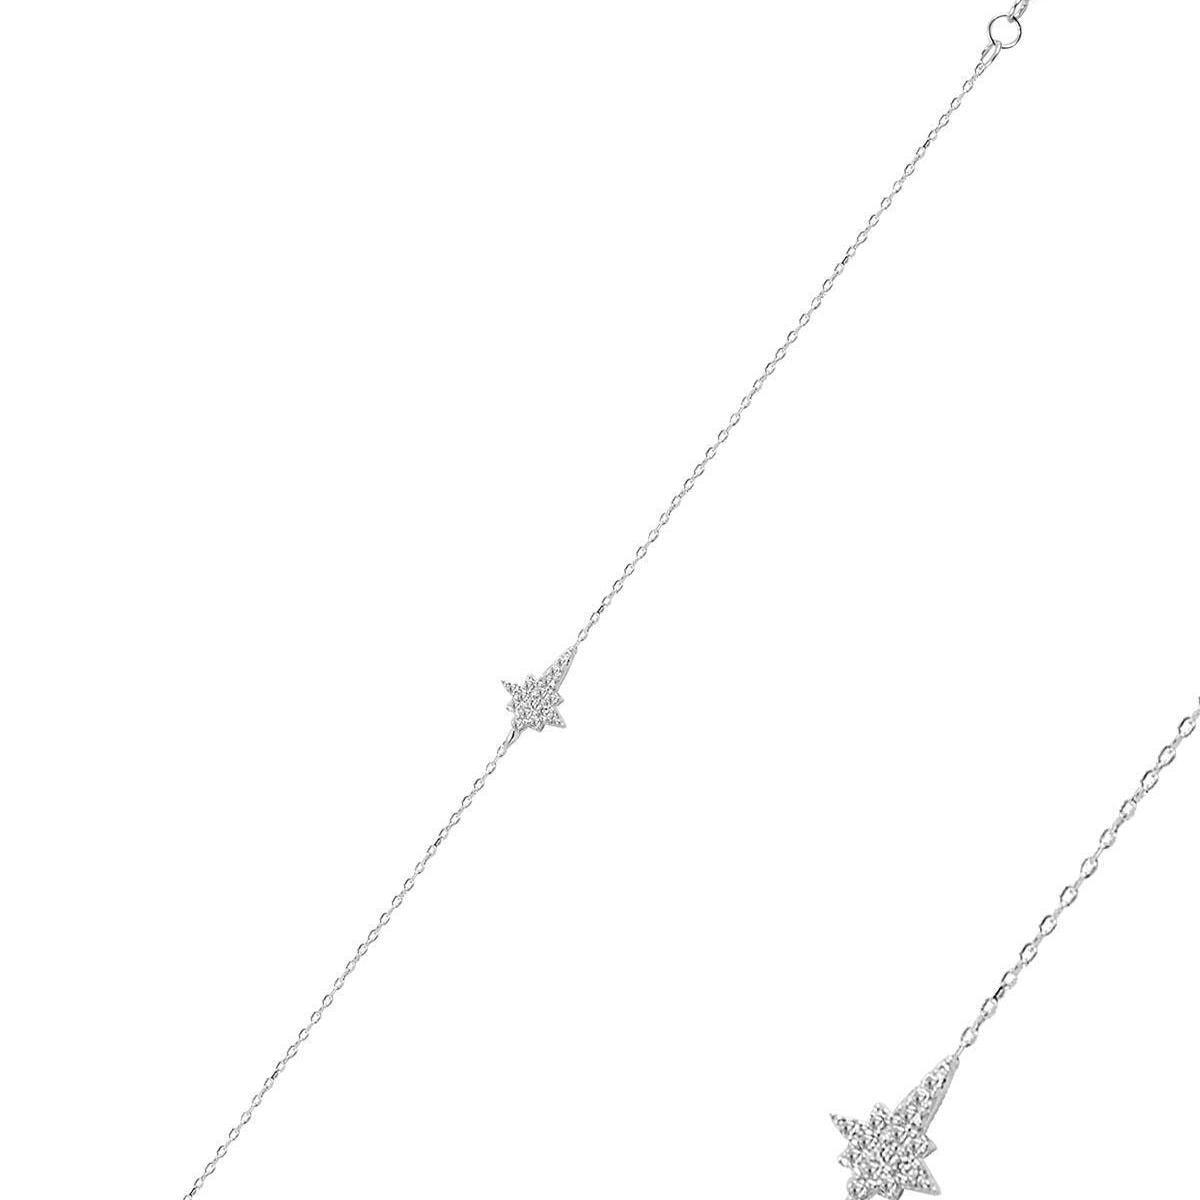 North Star Bracelet • Celestial Charm Bracelet • Gift For Her - Trending Silver Gifts